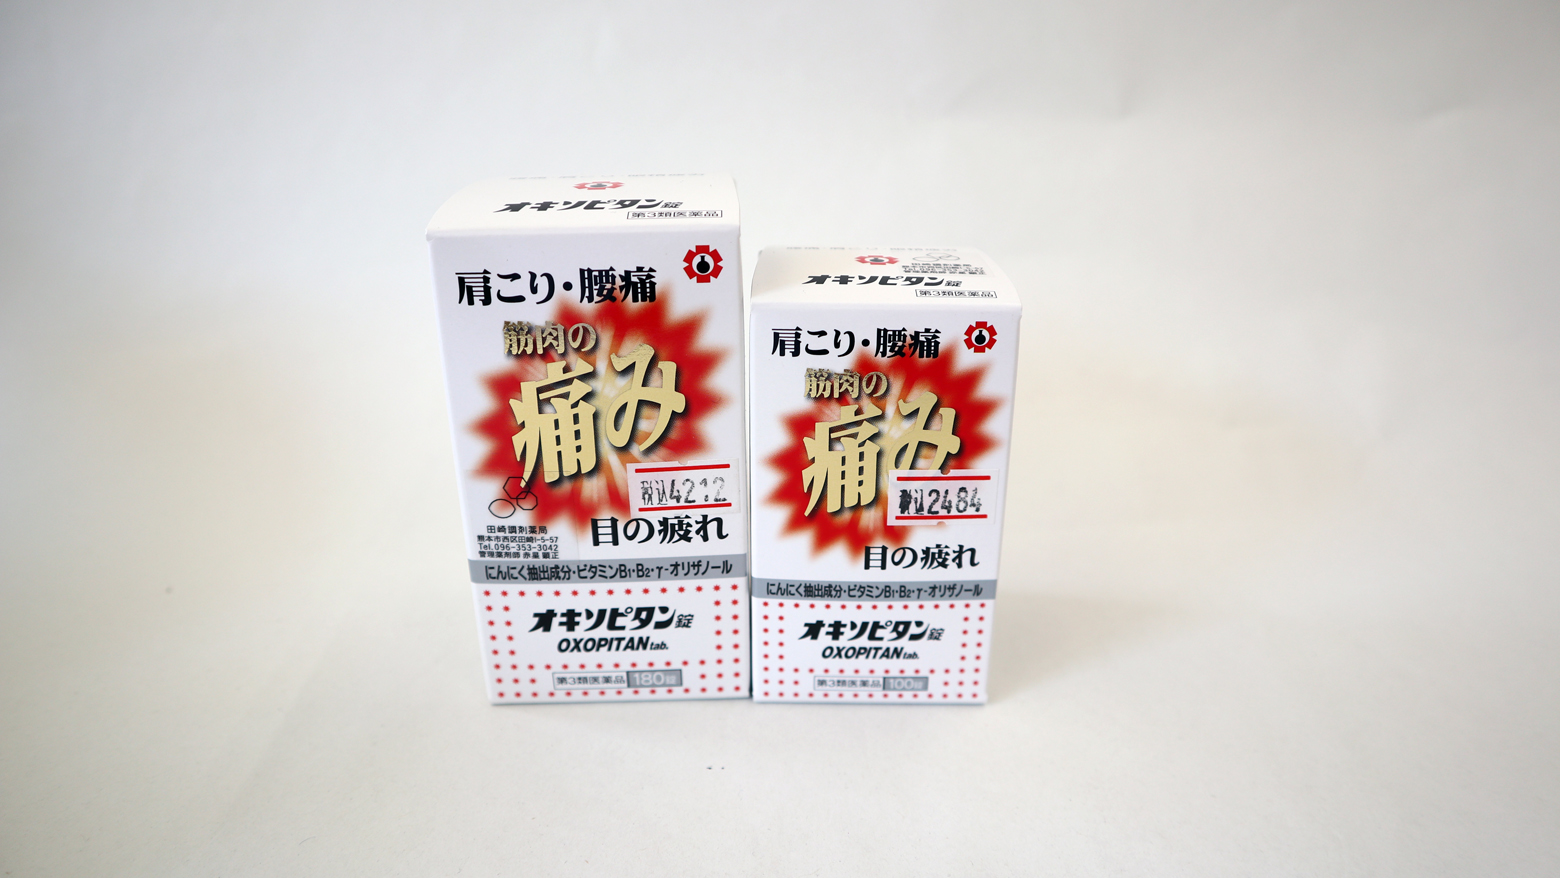 56999円 【SALE／99%OFF】 オキソピタンDXゴールド 180カプセル 3個セット 第３類医薬品